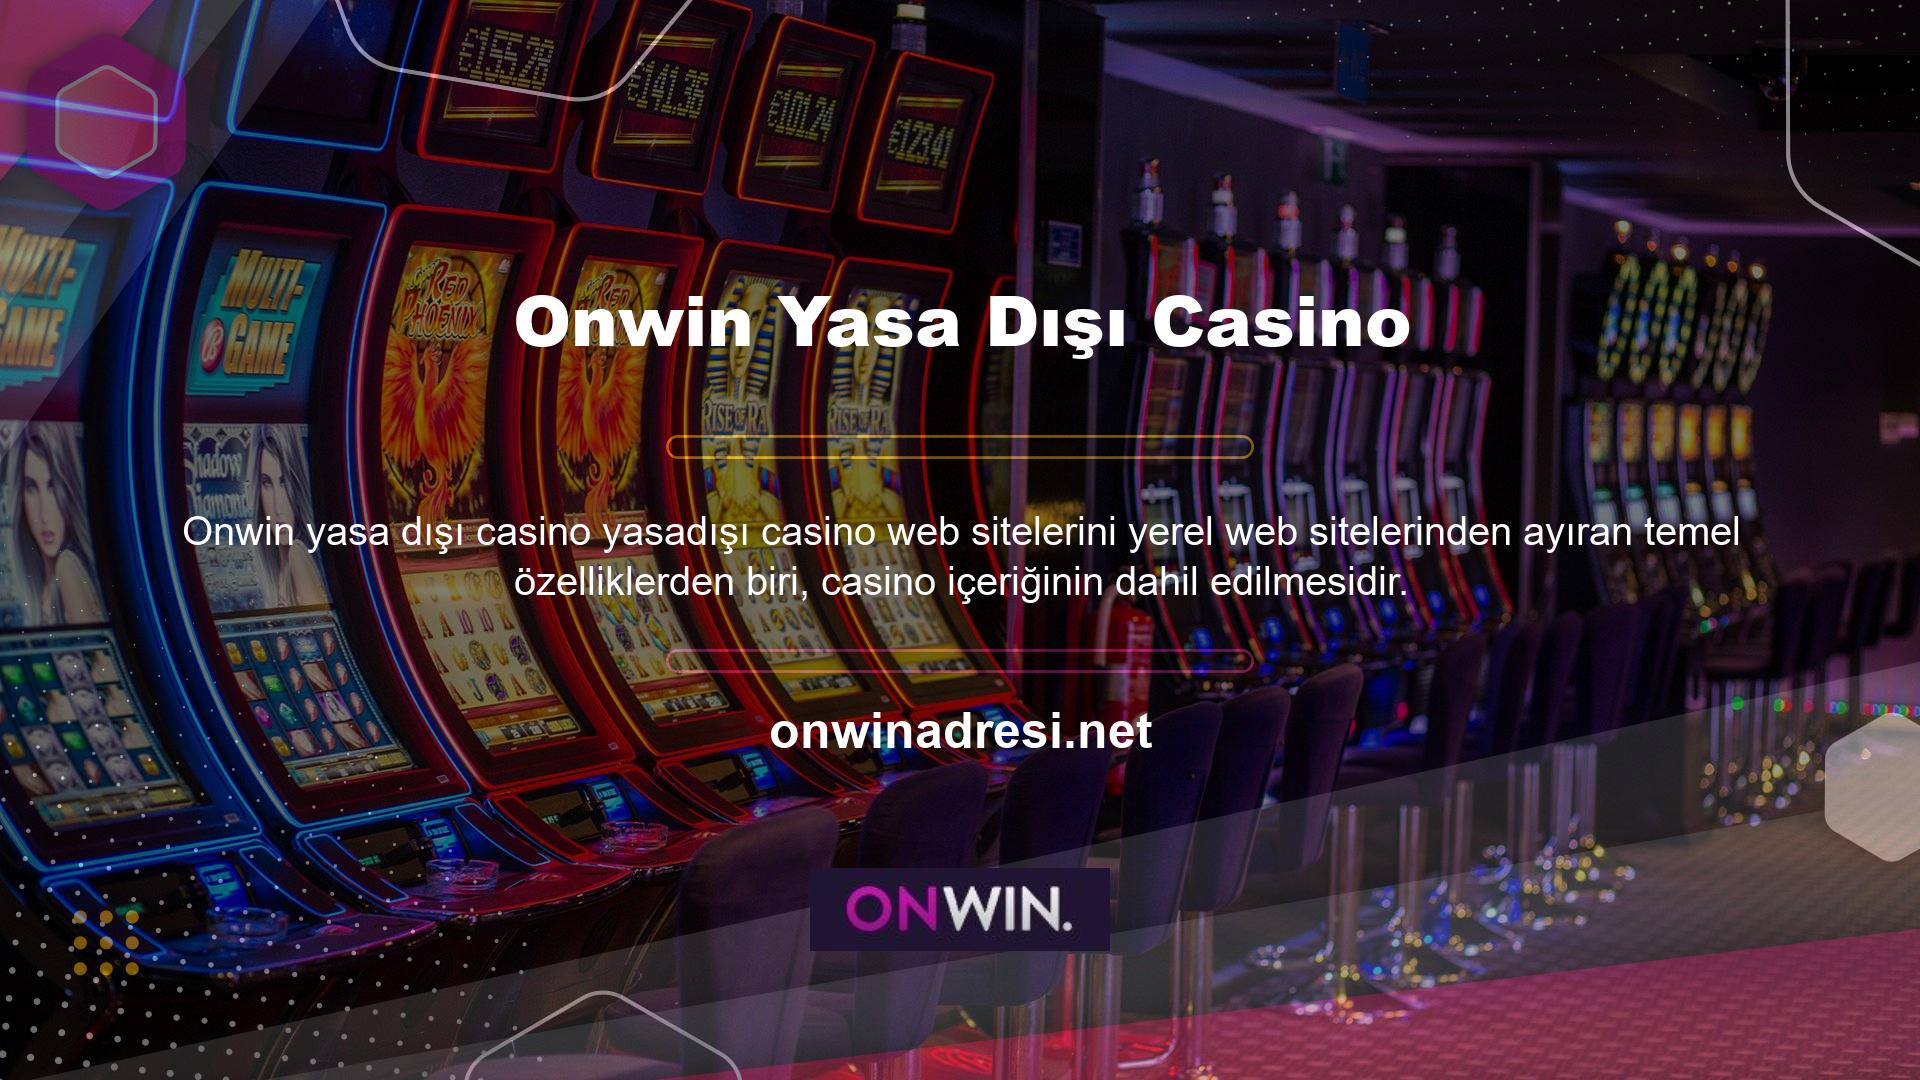 Onwin Sitesi Oyun meraklıları, Onwin Gaming web sitesindeki casino içeriğine de göz atabilirler